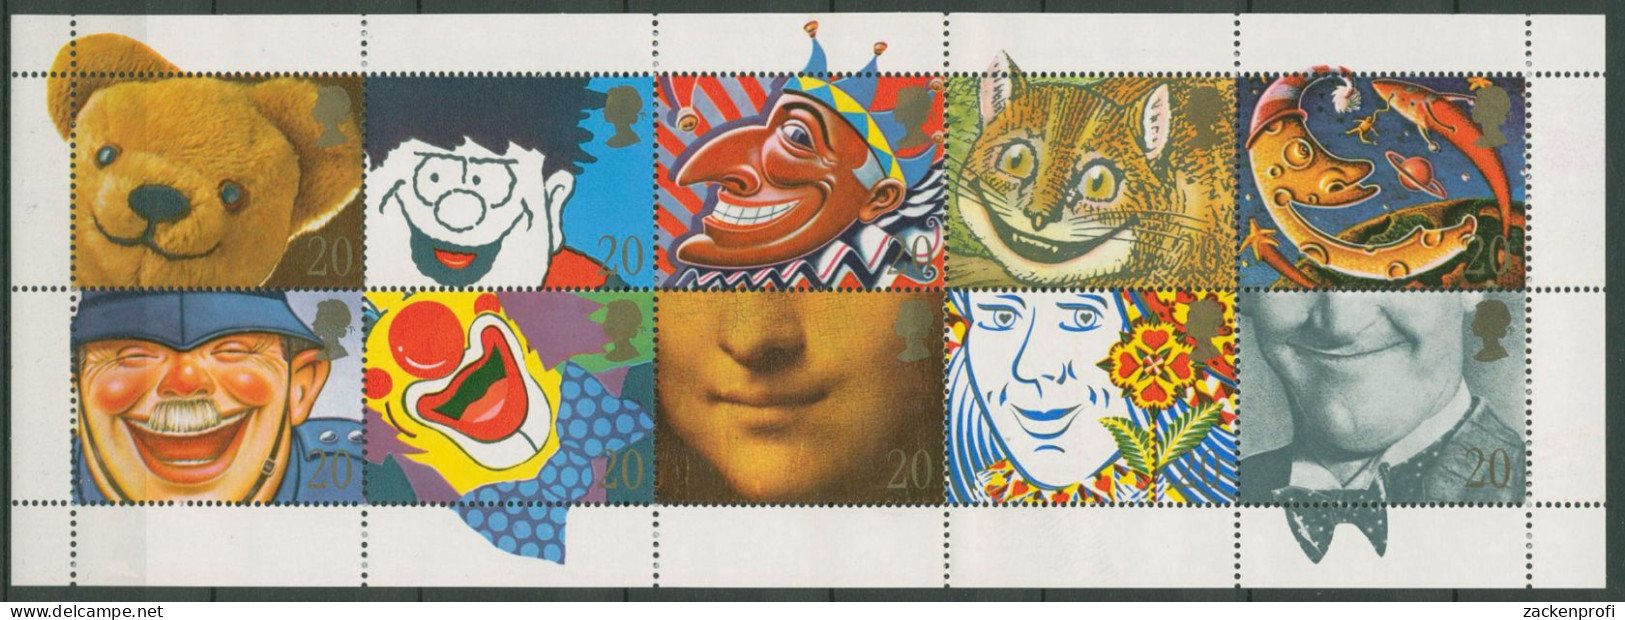 Großbritannien 1991 Teddy Clown 1327/36 I A K Postfrisch, Gefaltet (SG28111) - Blocs-feuillets